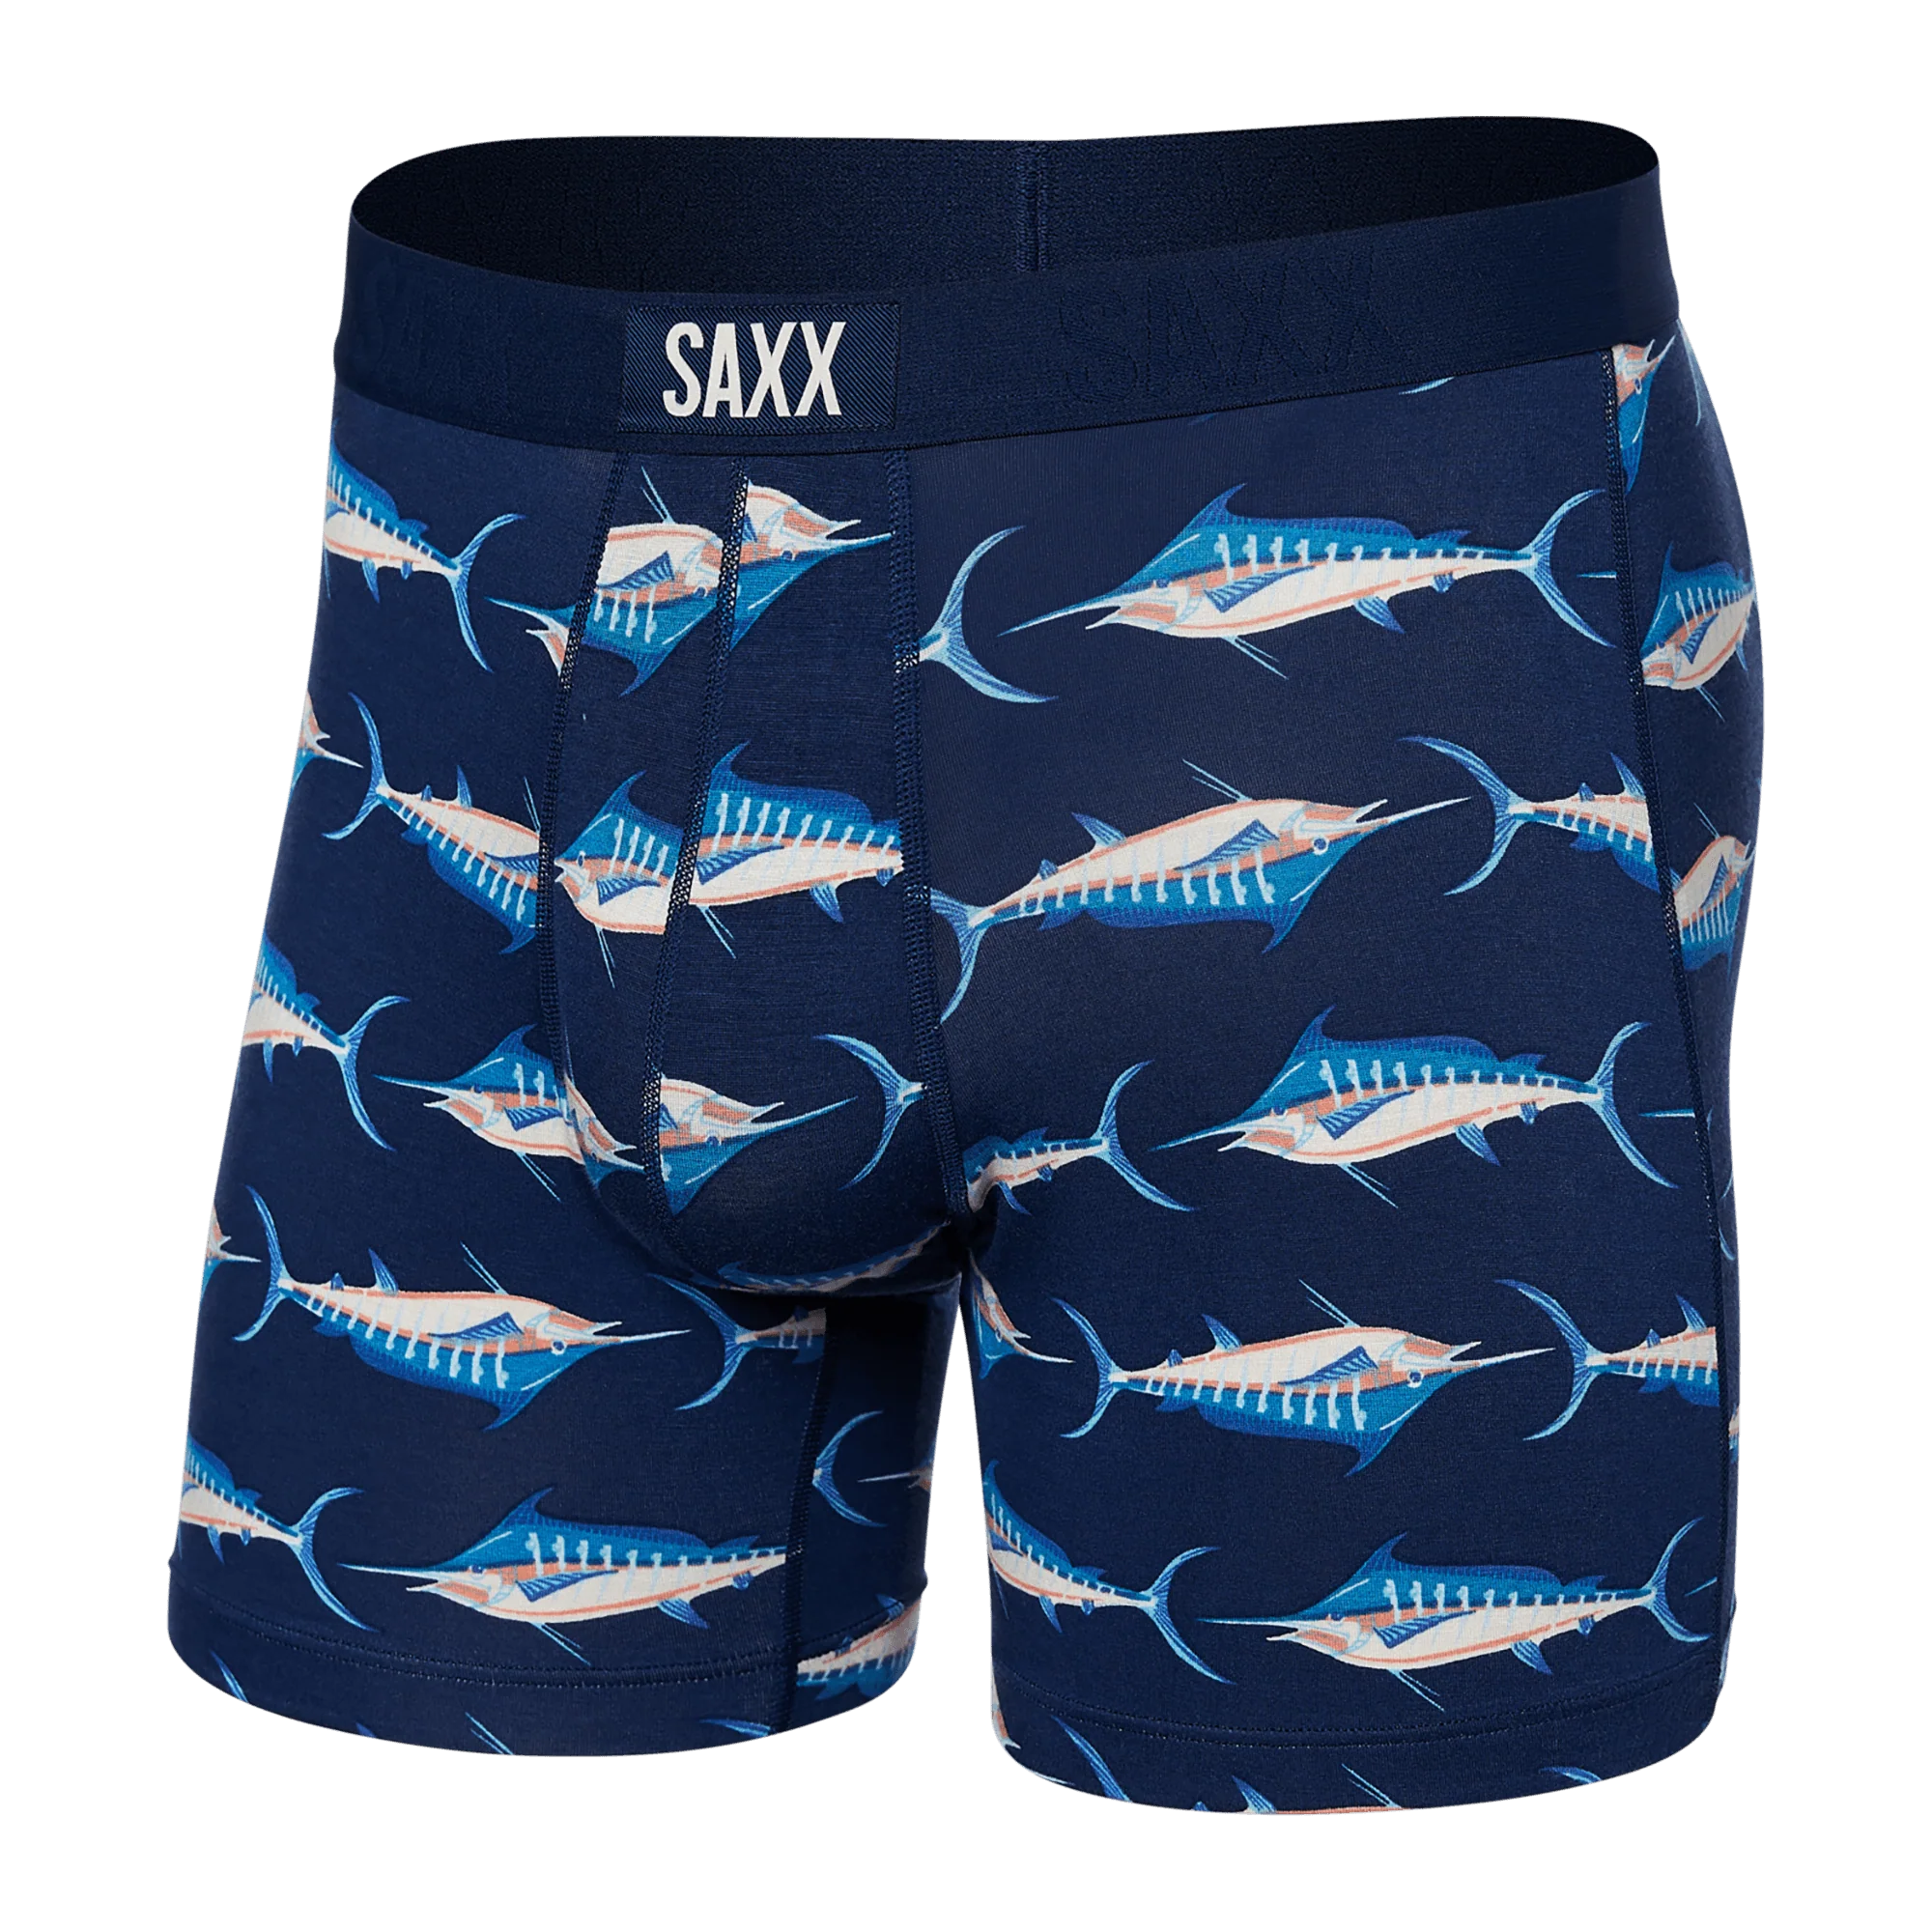 'SAXX Vibe Super Soft Boxer Brief - Marlin Matrix' in 'Midnight' colour